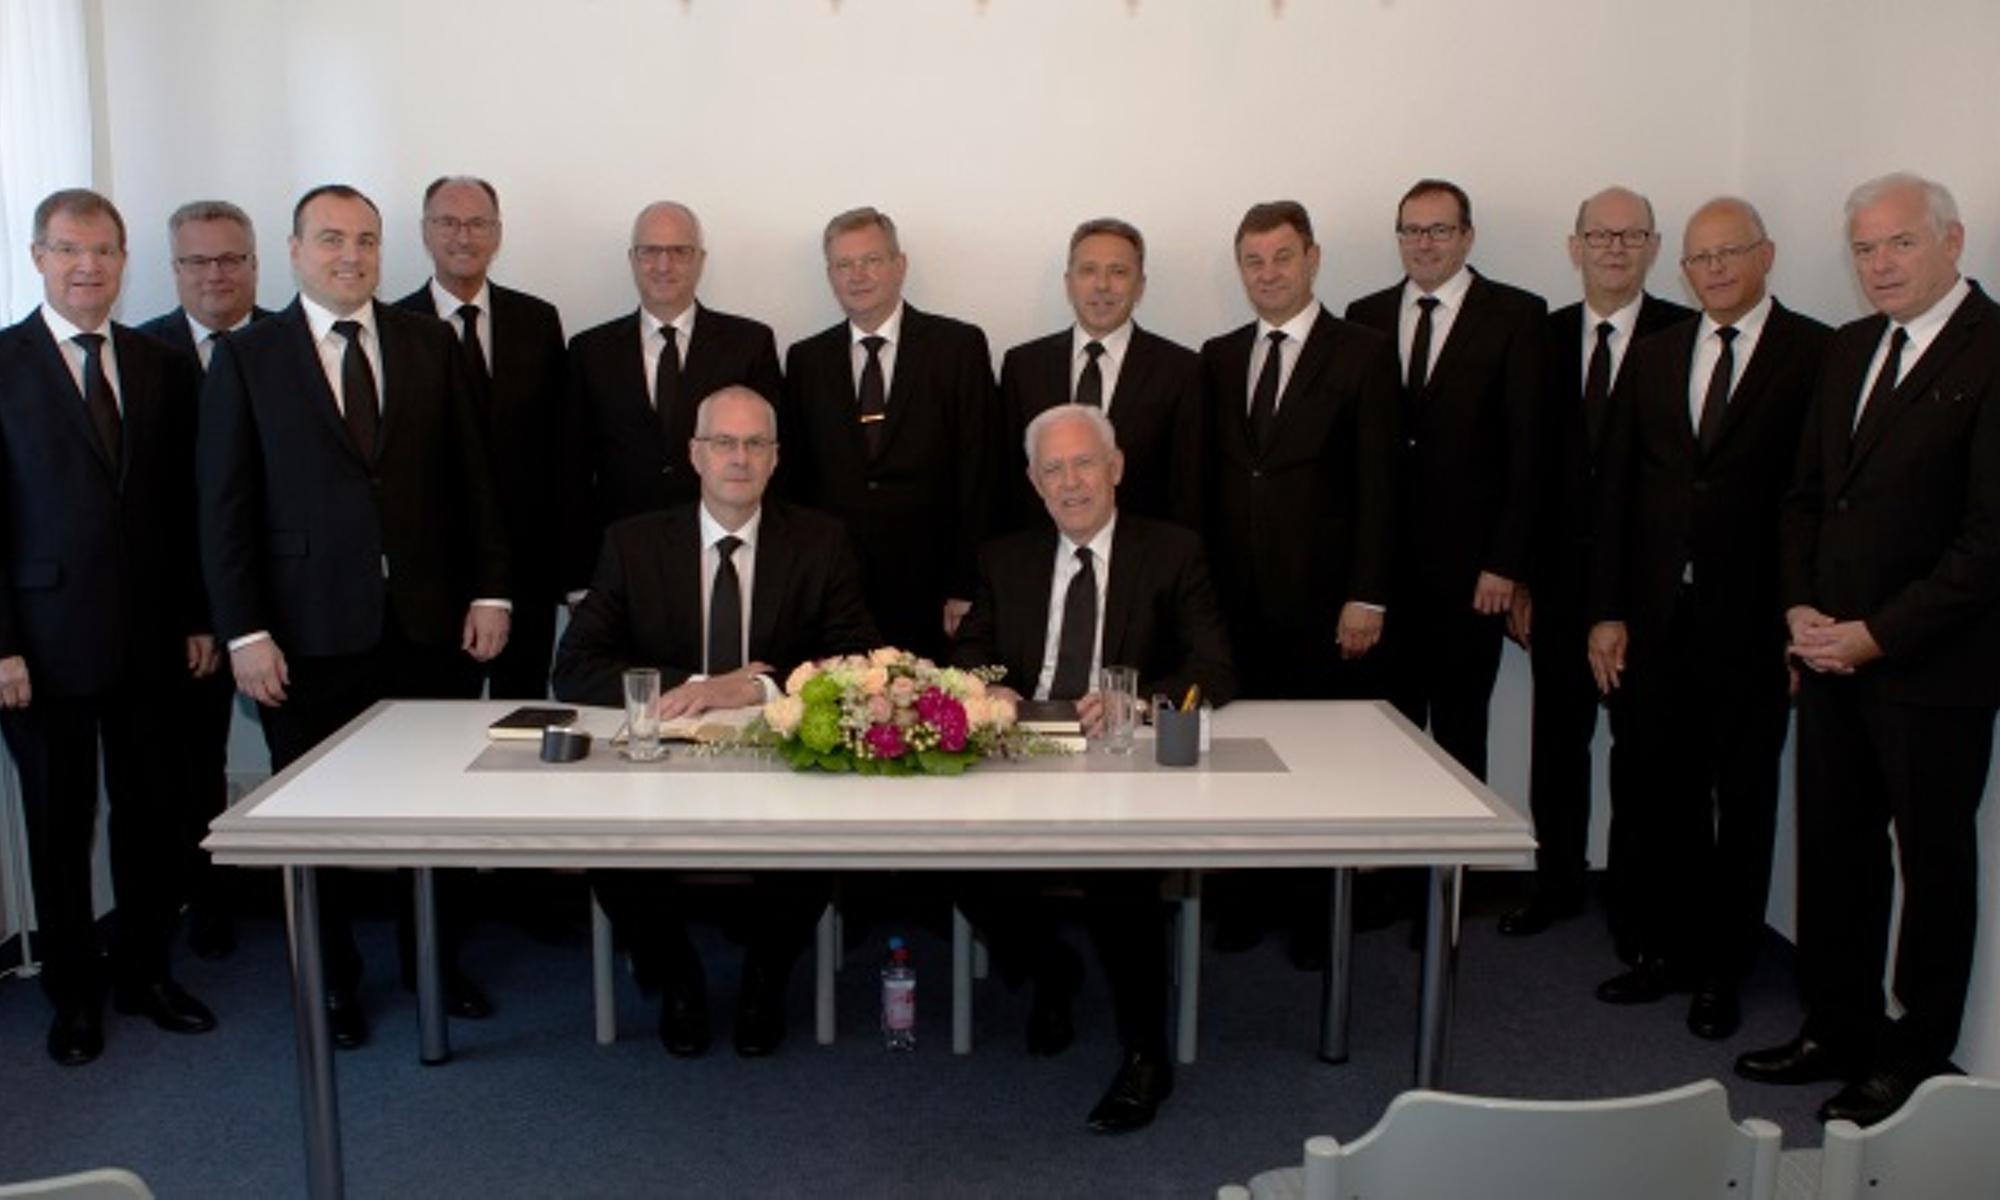 Bezirksapostel Michael Ehrich mit den Aposteln und Bischöfen Süddeutschlands